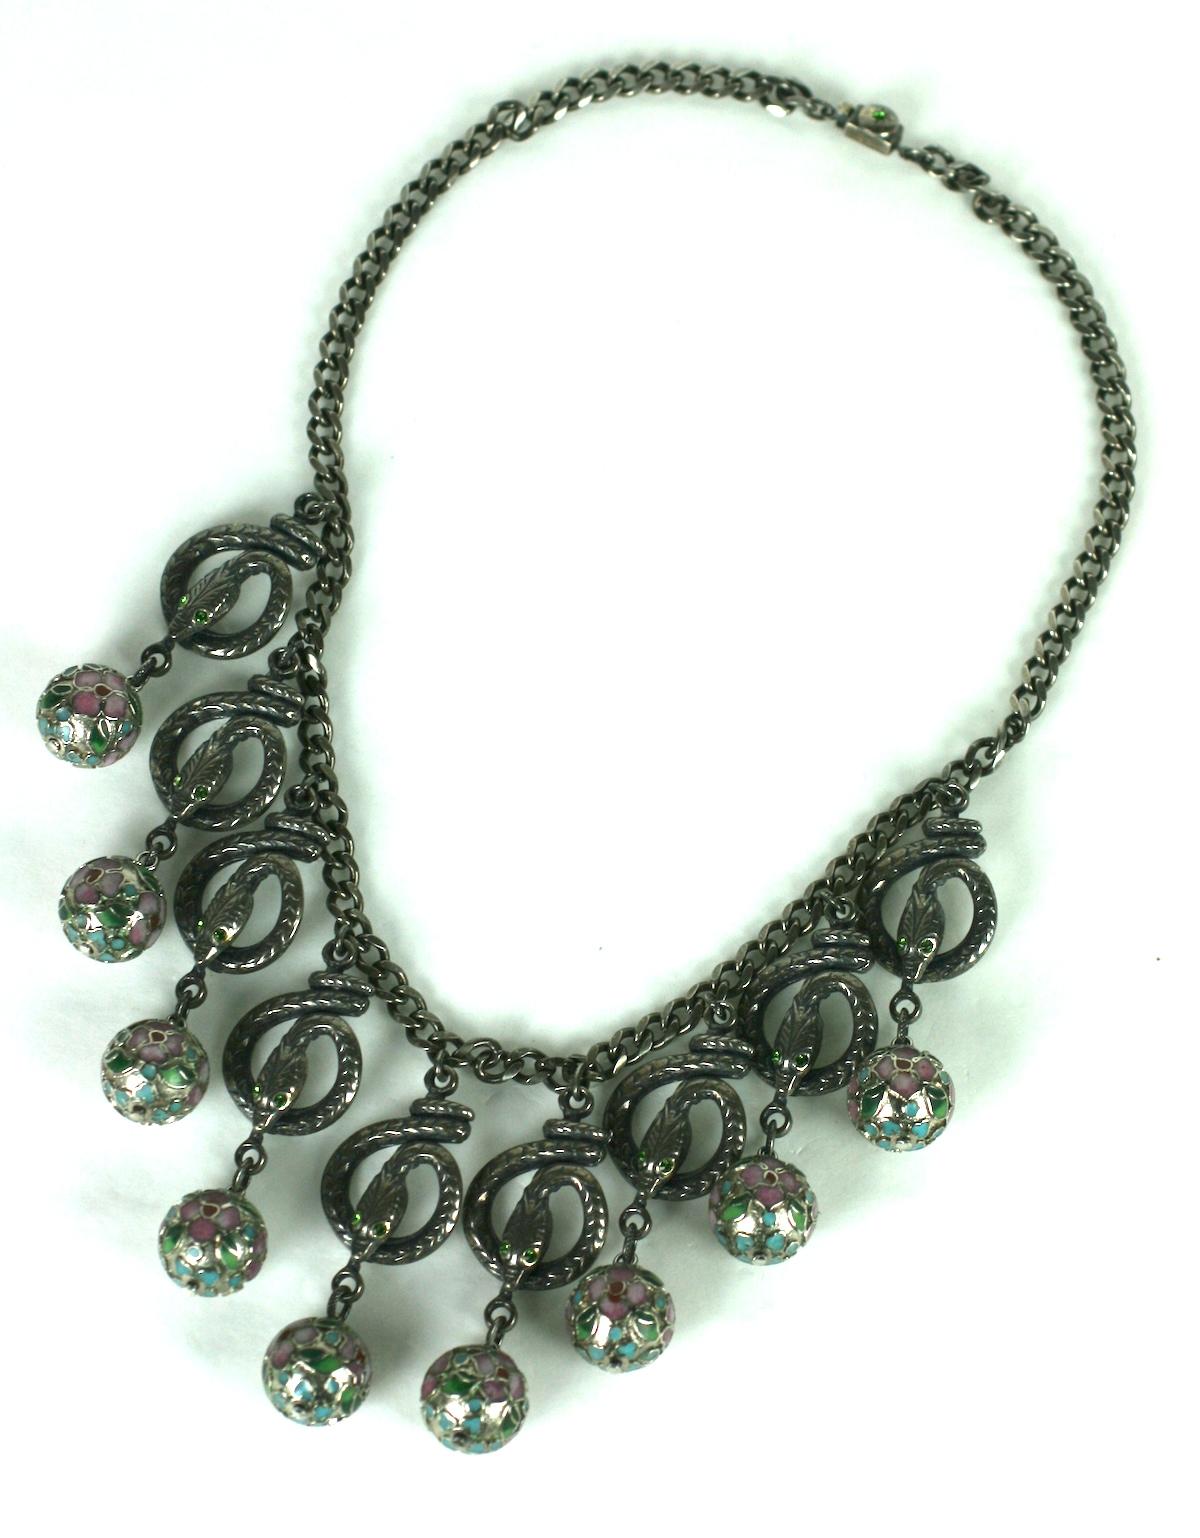 Collier à pendentifs en forme de serpent Askew London, de style néo-zélandais, avec des perles cloisonnées en émail de couleur rose pâle et vert.  Finition antique argentée. Les serpents sont sertis d'yeux en cristal émeraude.
années 1980,